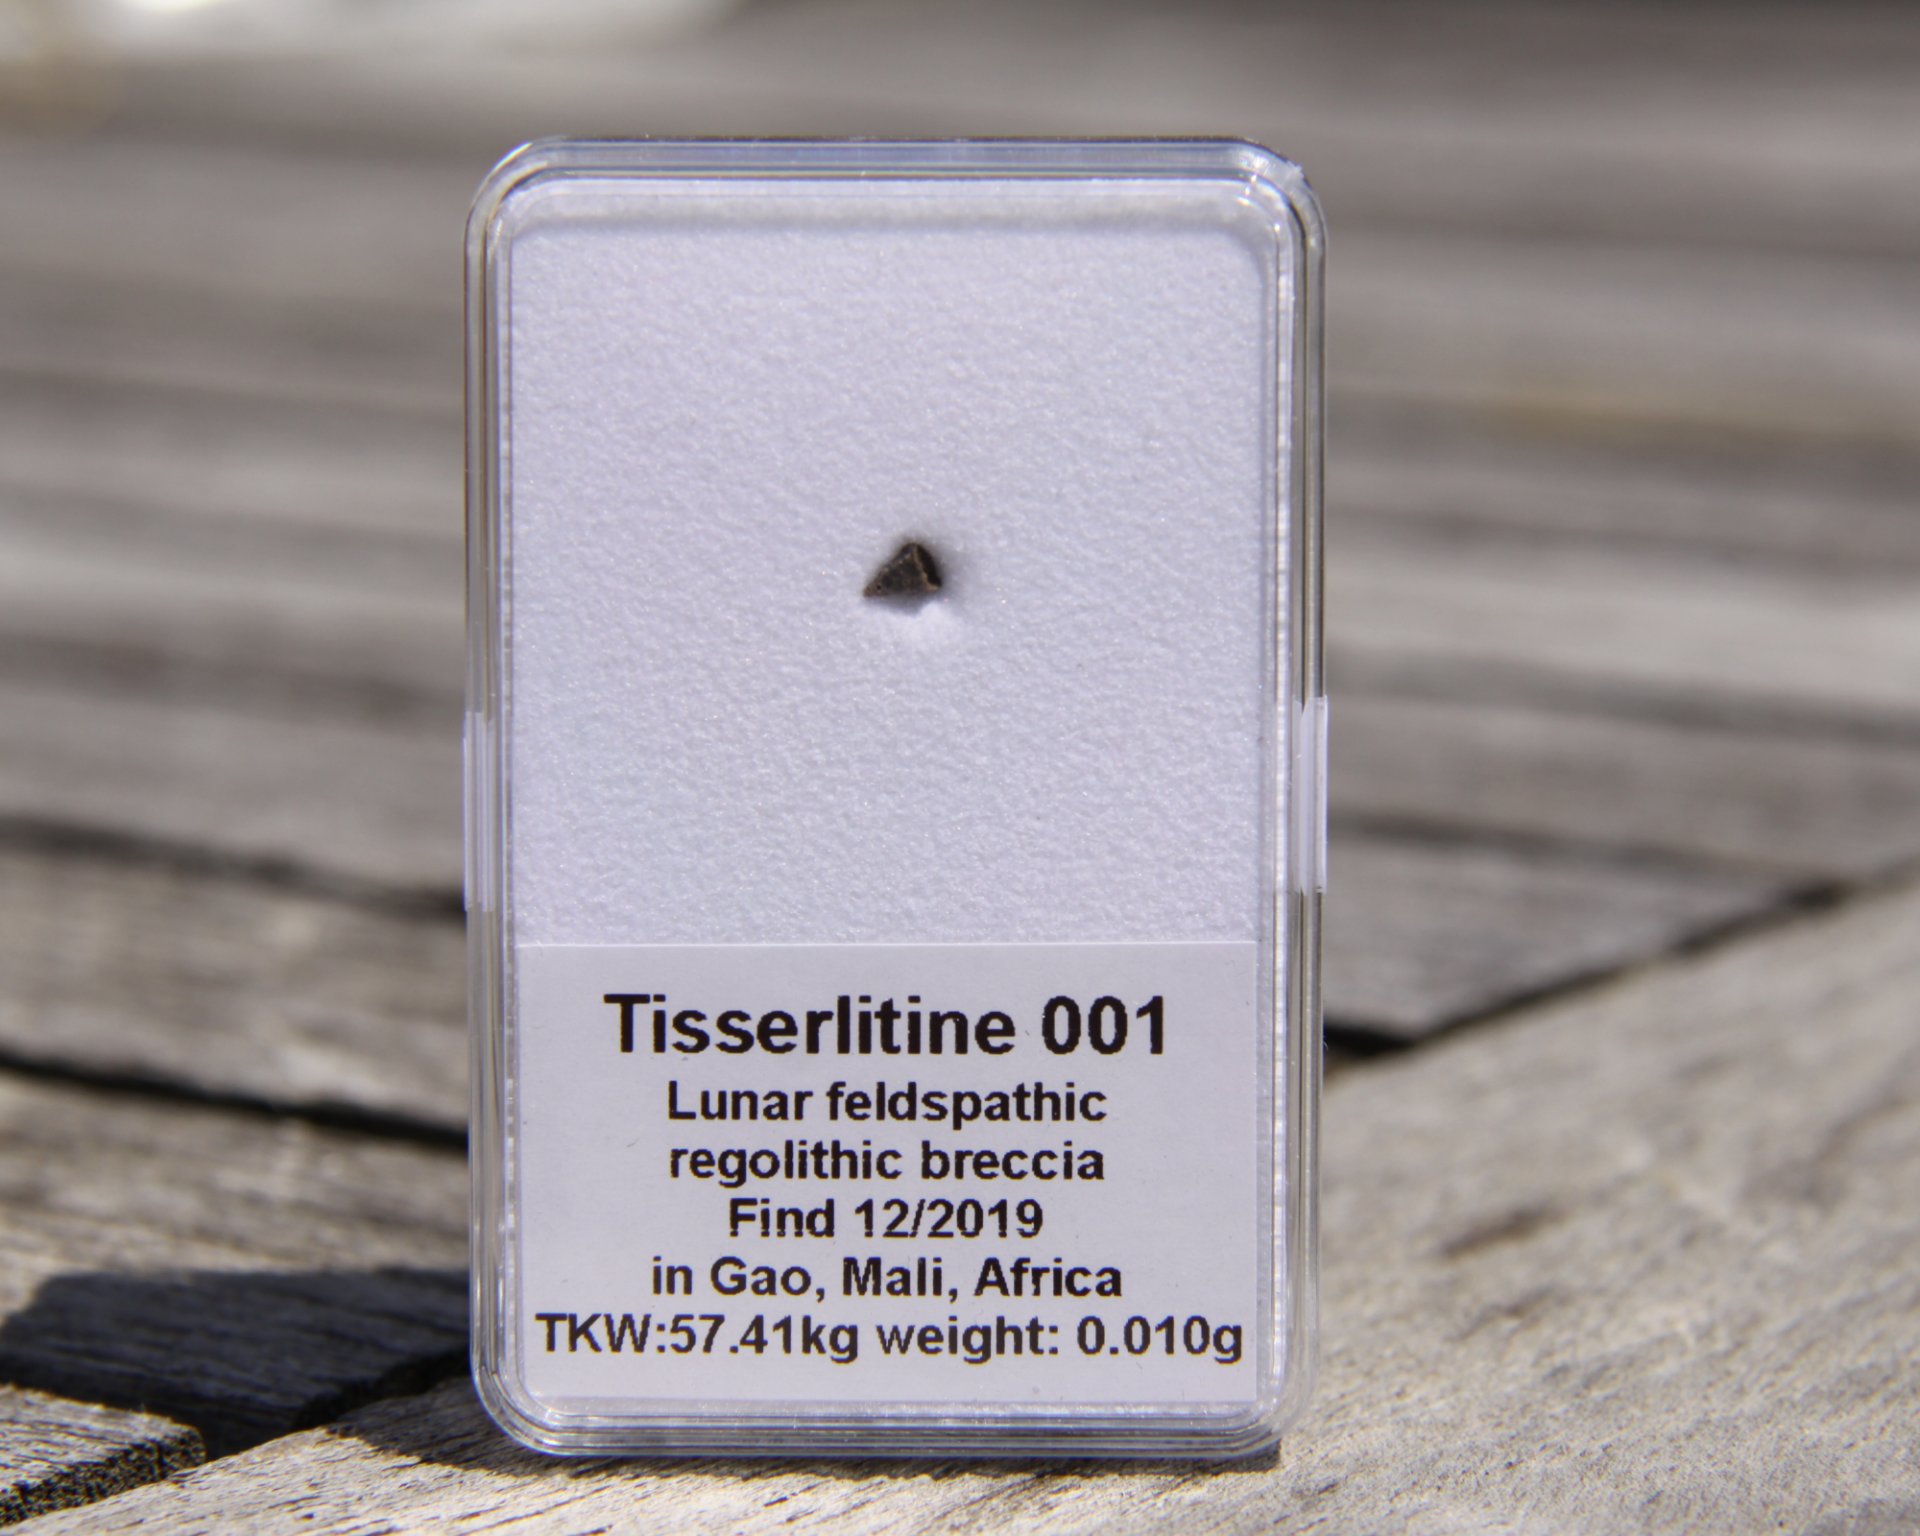 Tisserlitine 001